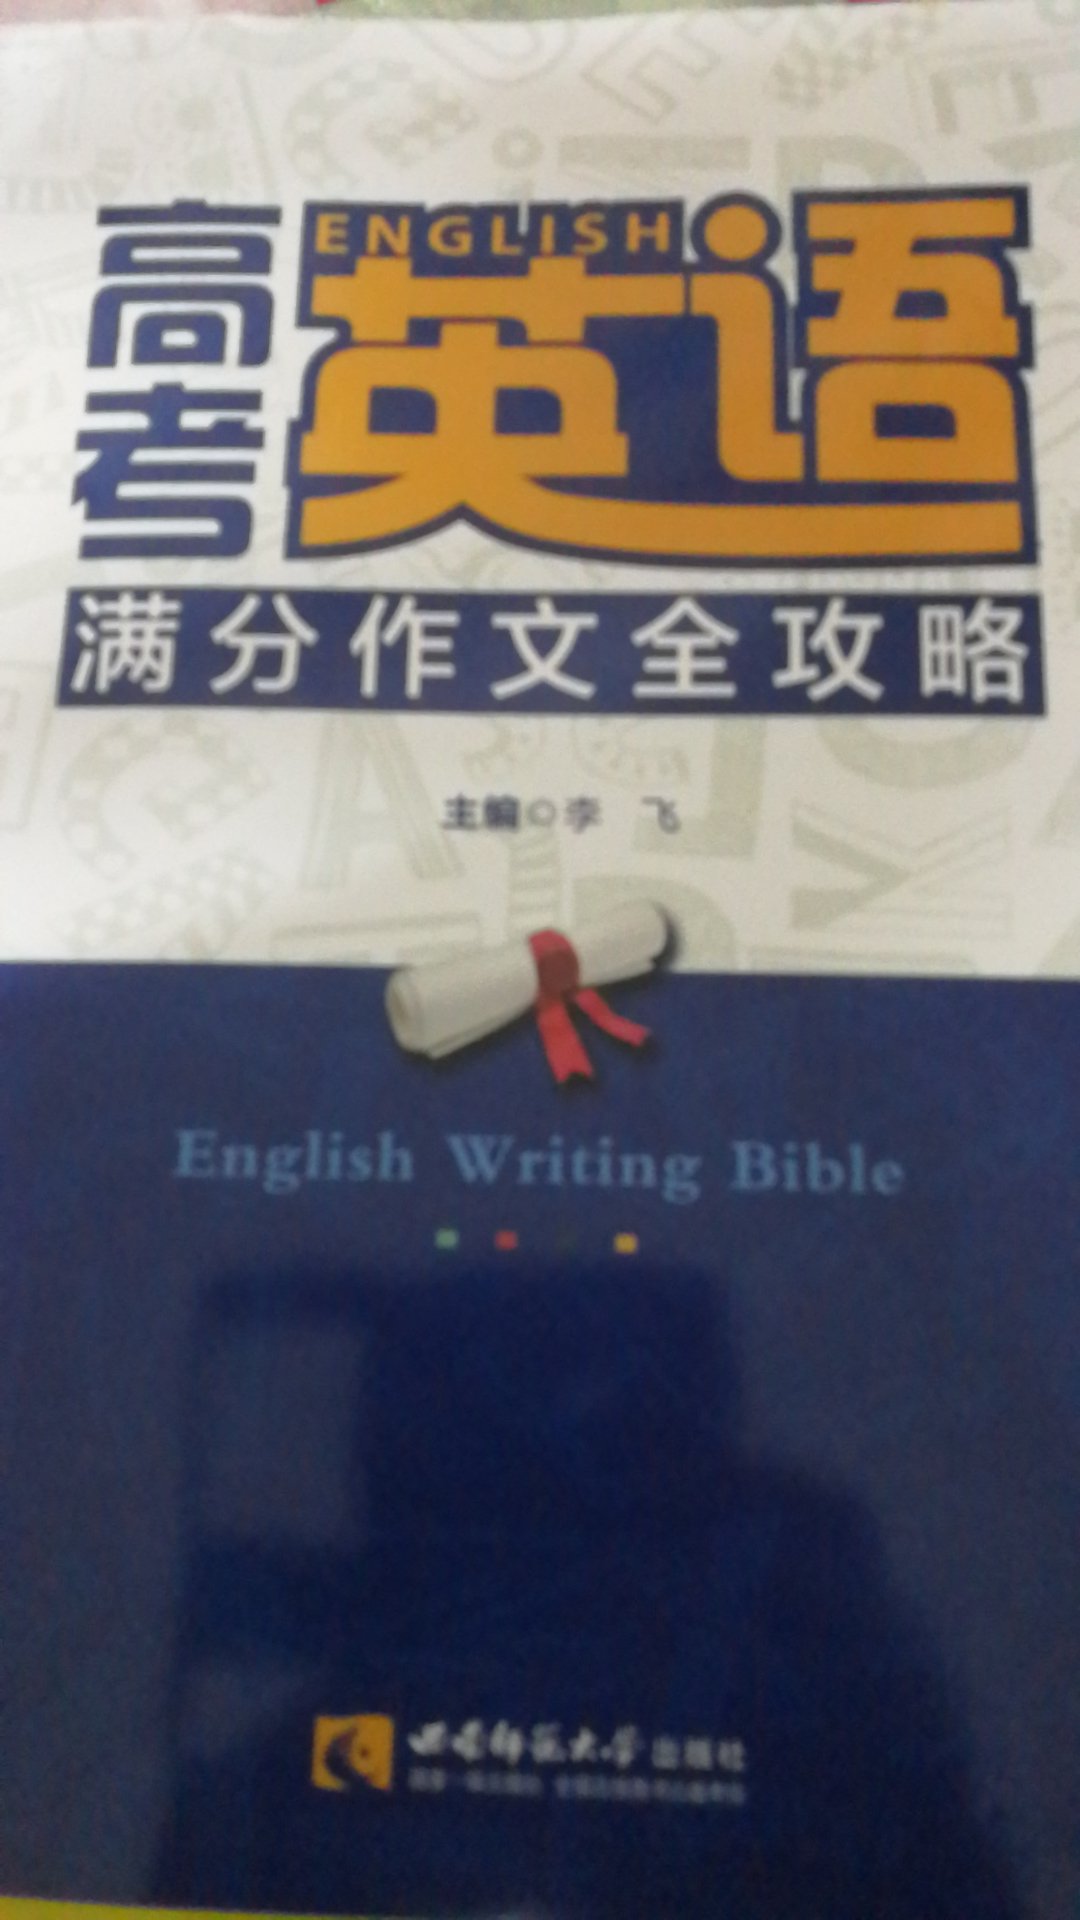 对高考英语写作有帮助，值得看一看。